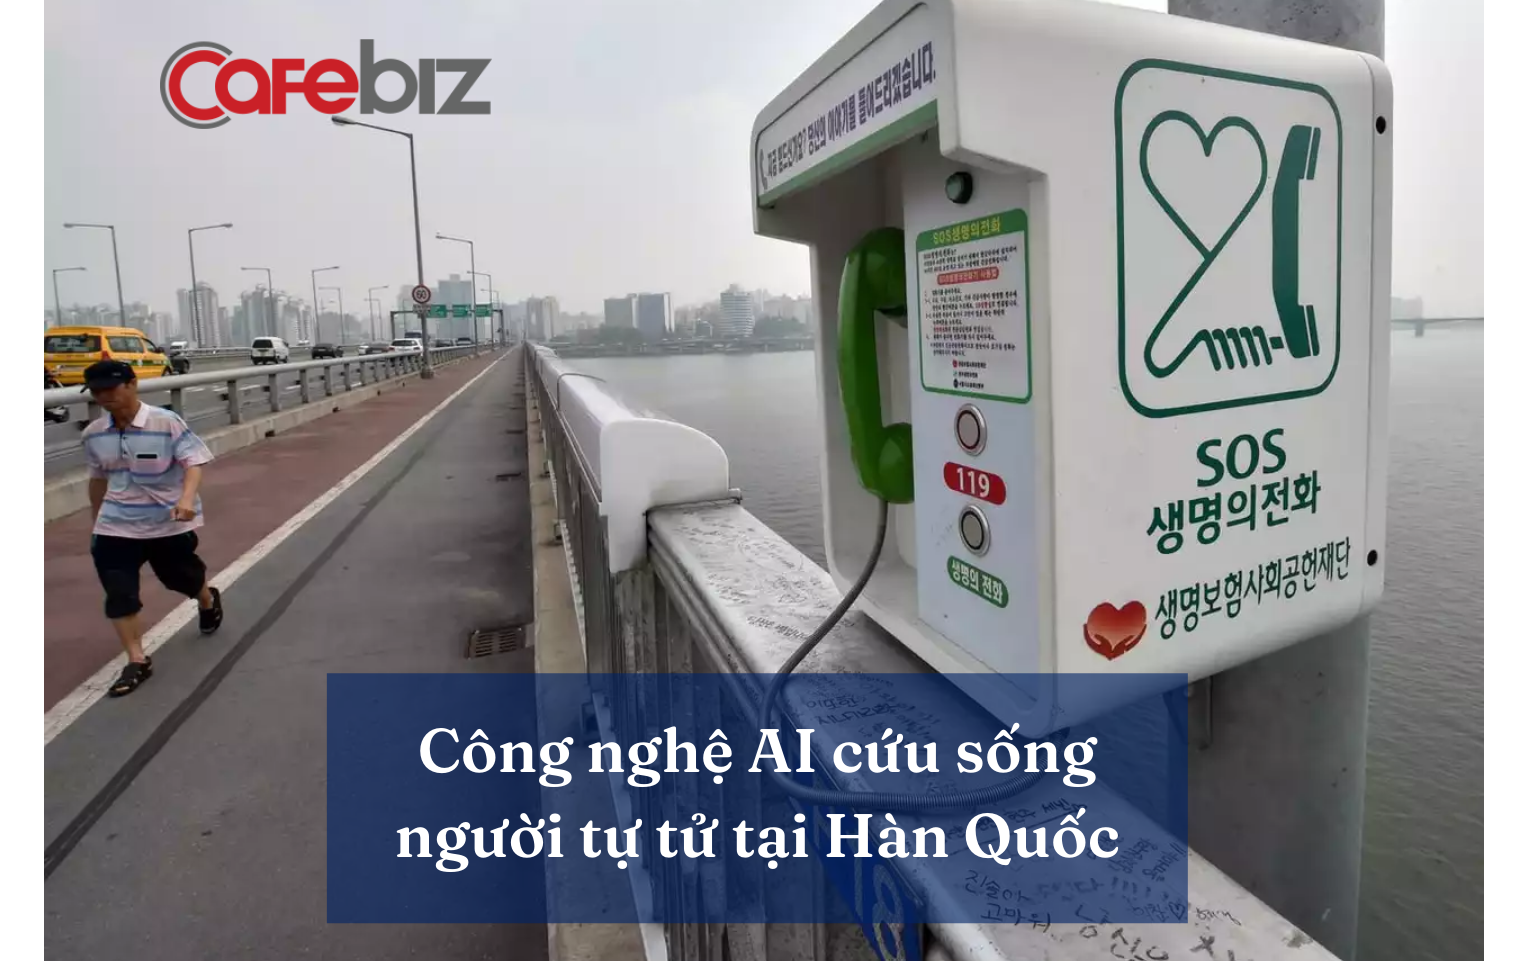 28 cây cầu bắc qua sông Hàn là điểm nóng tự tử, Hàn Quốc sử dụng AI để ngăn dòng người ‘muốn chết’ - Ảnh 1.